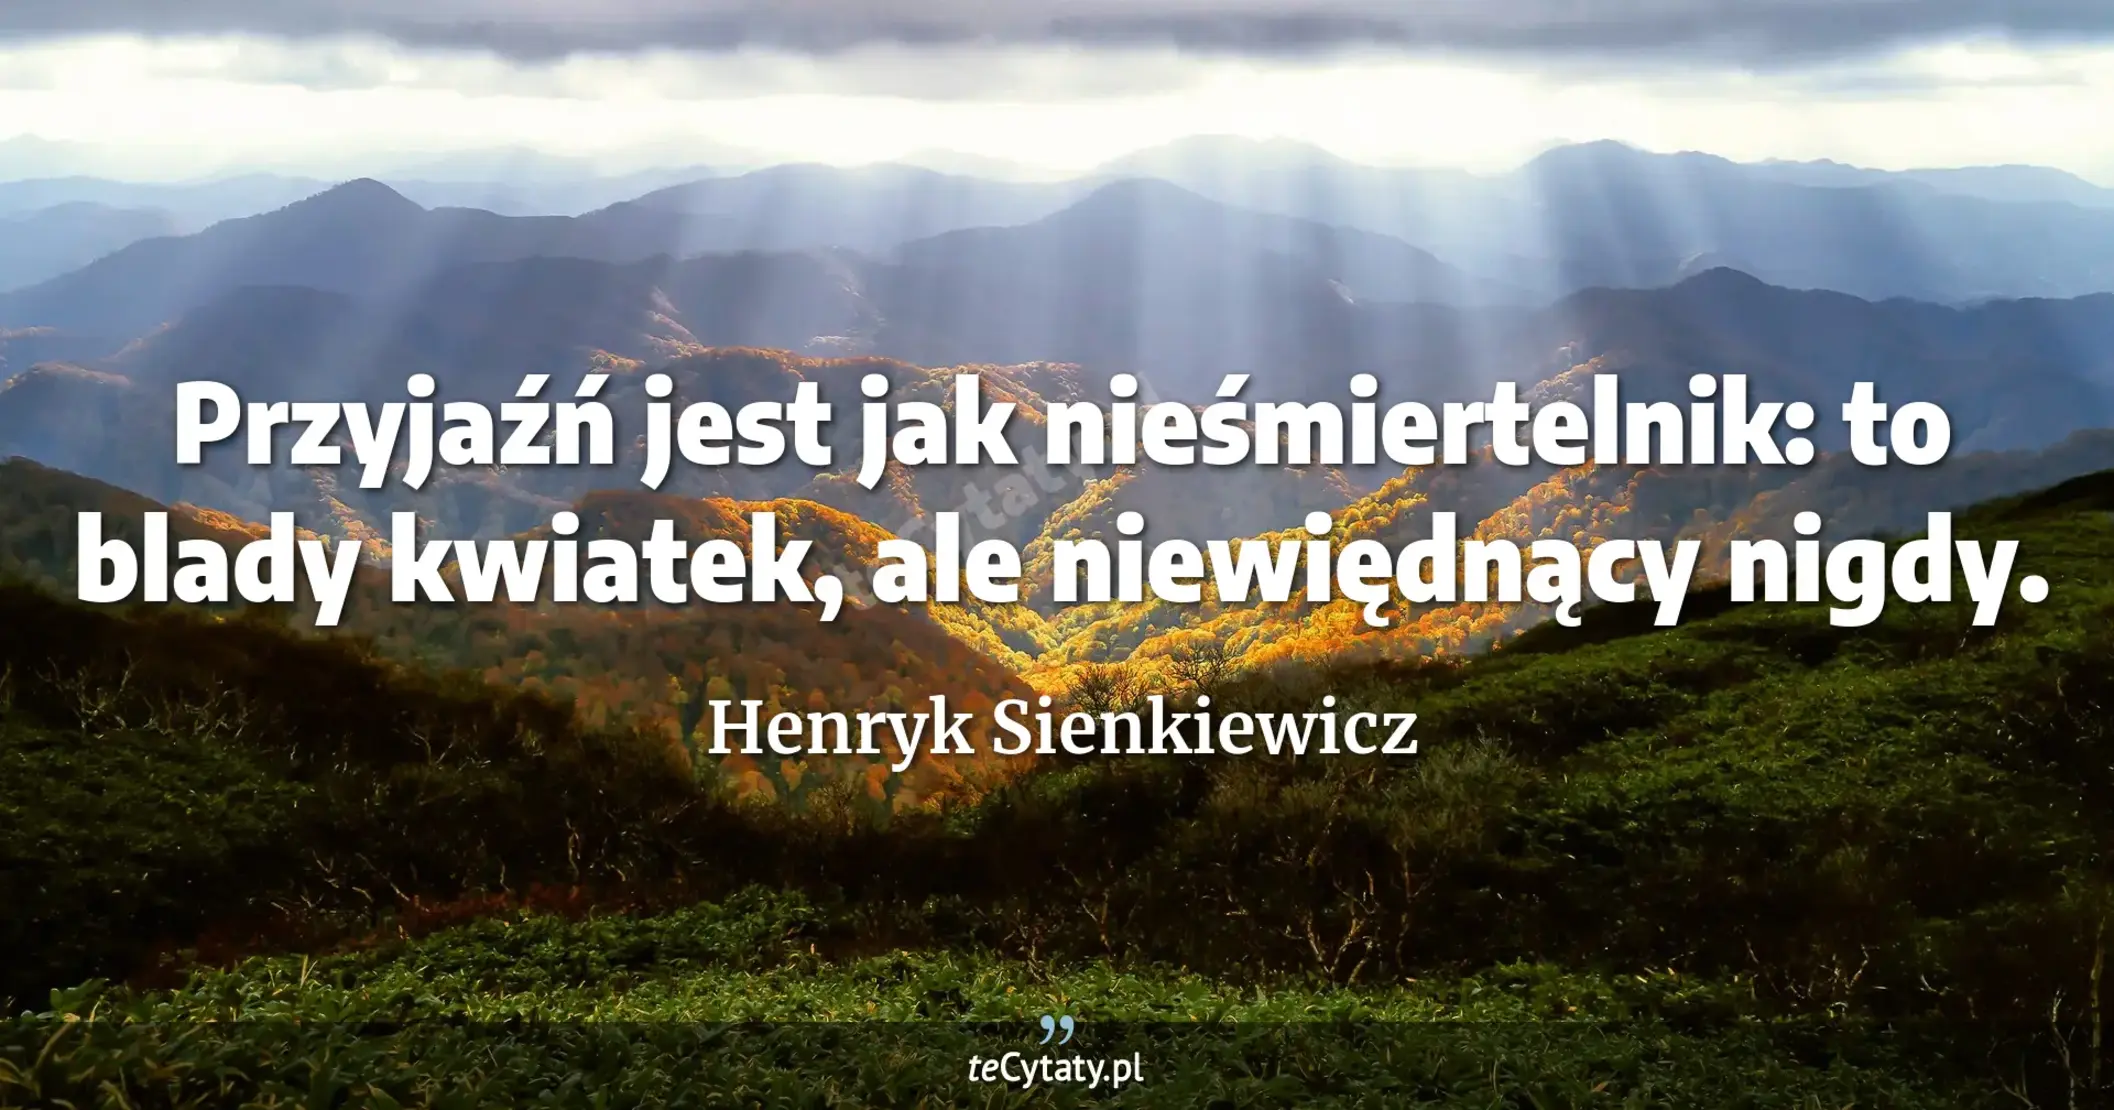 Przyjaźń jest jak nieśmiertelnik: to blady kwiatek, ale niewiędnący nigdy. - Henryk Sienkiewicz